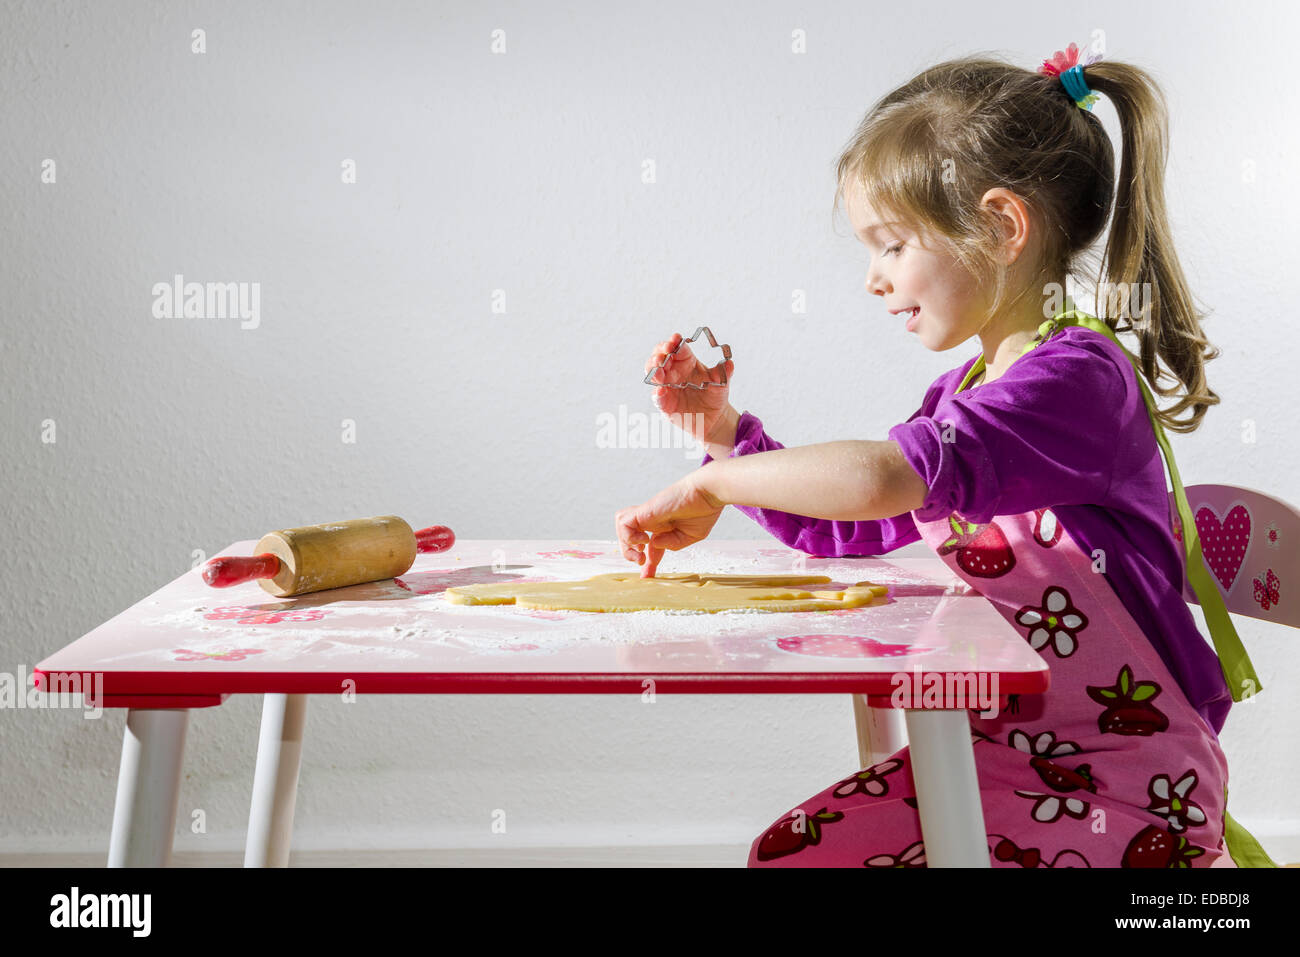 Girl, 3 years, baking Christmas cookies Stock Photo